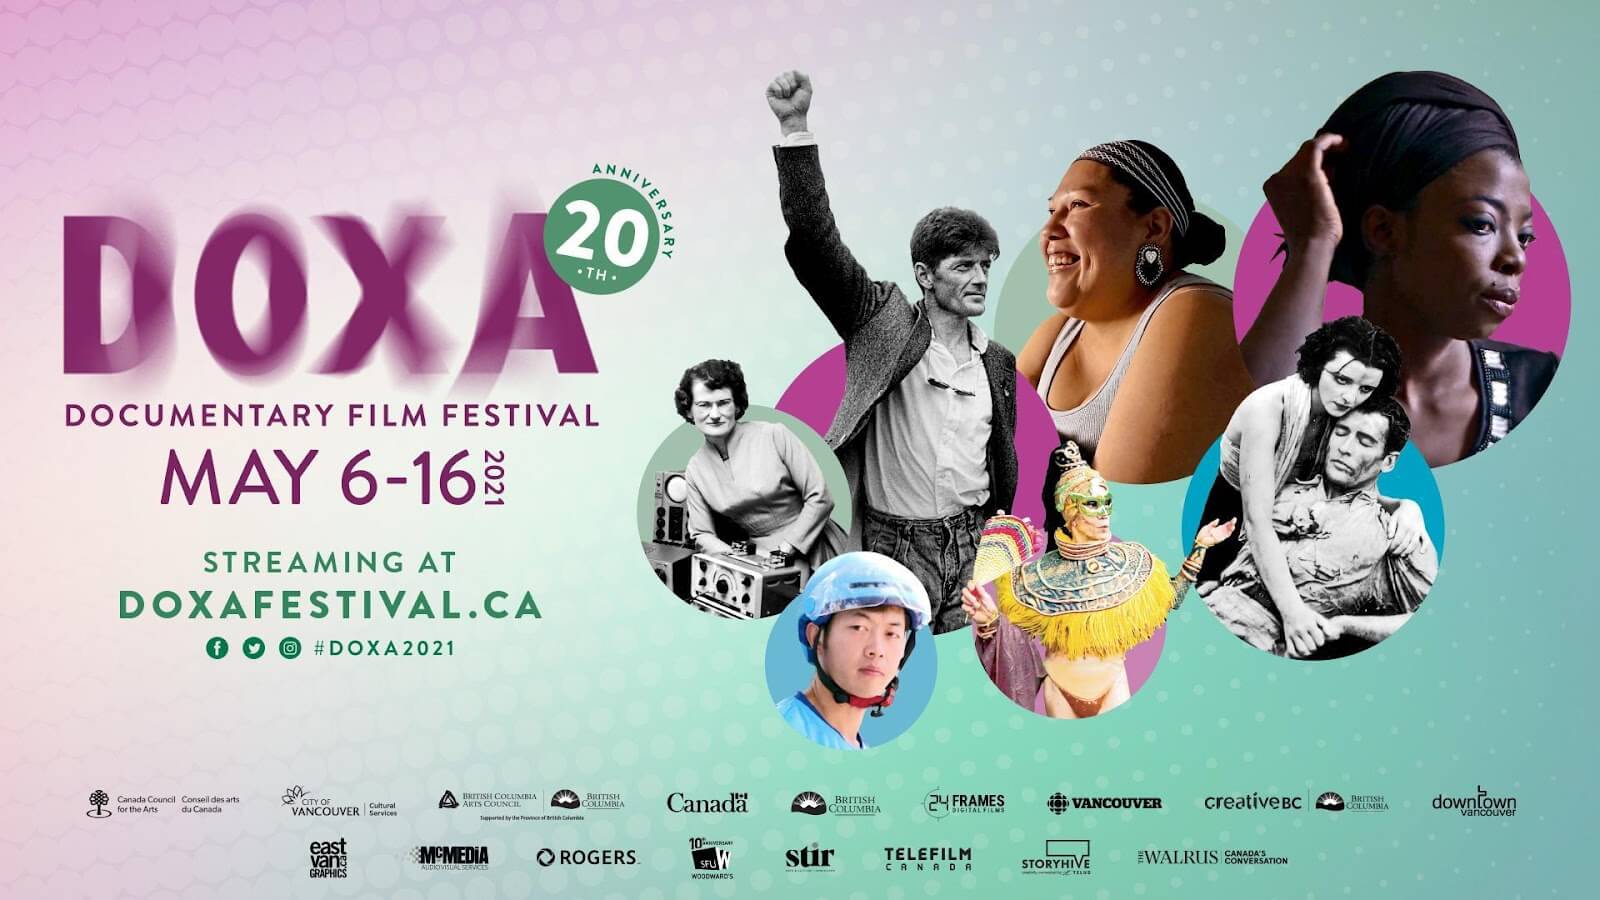 DOXA Documentary Film Festival May 6-16, 2021